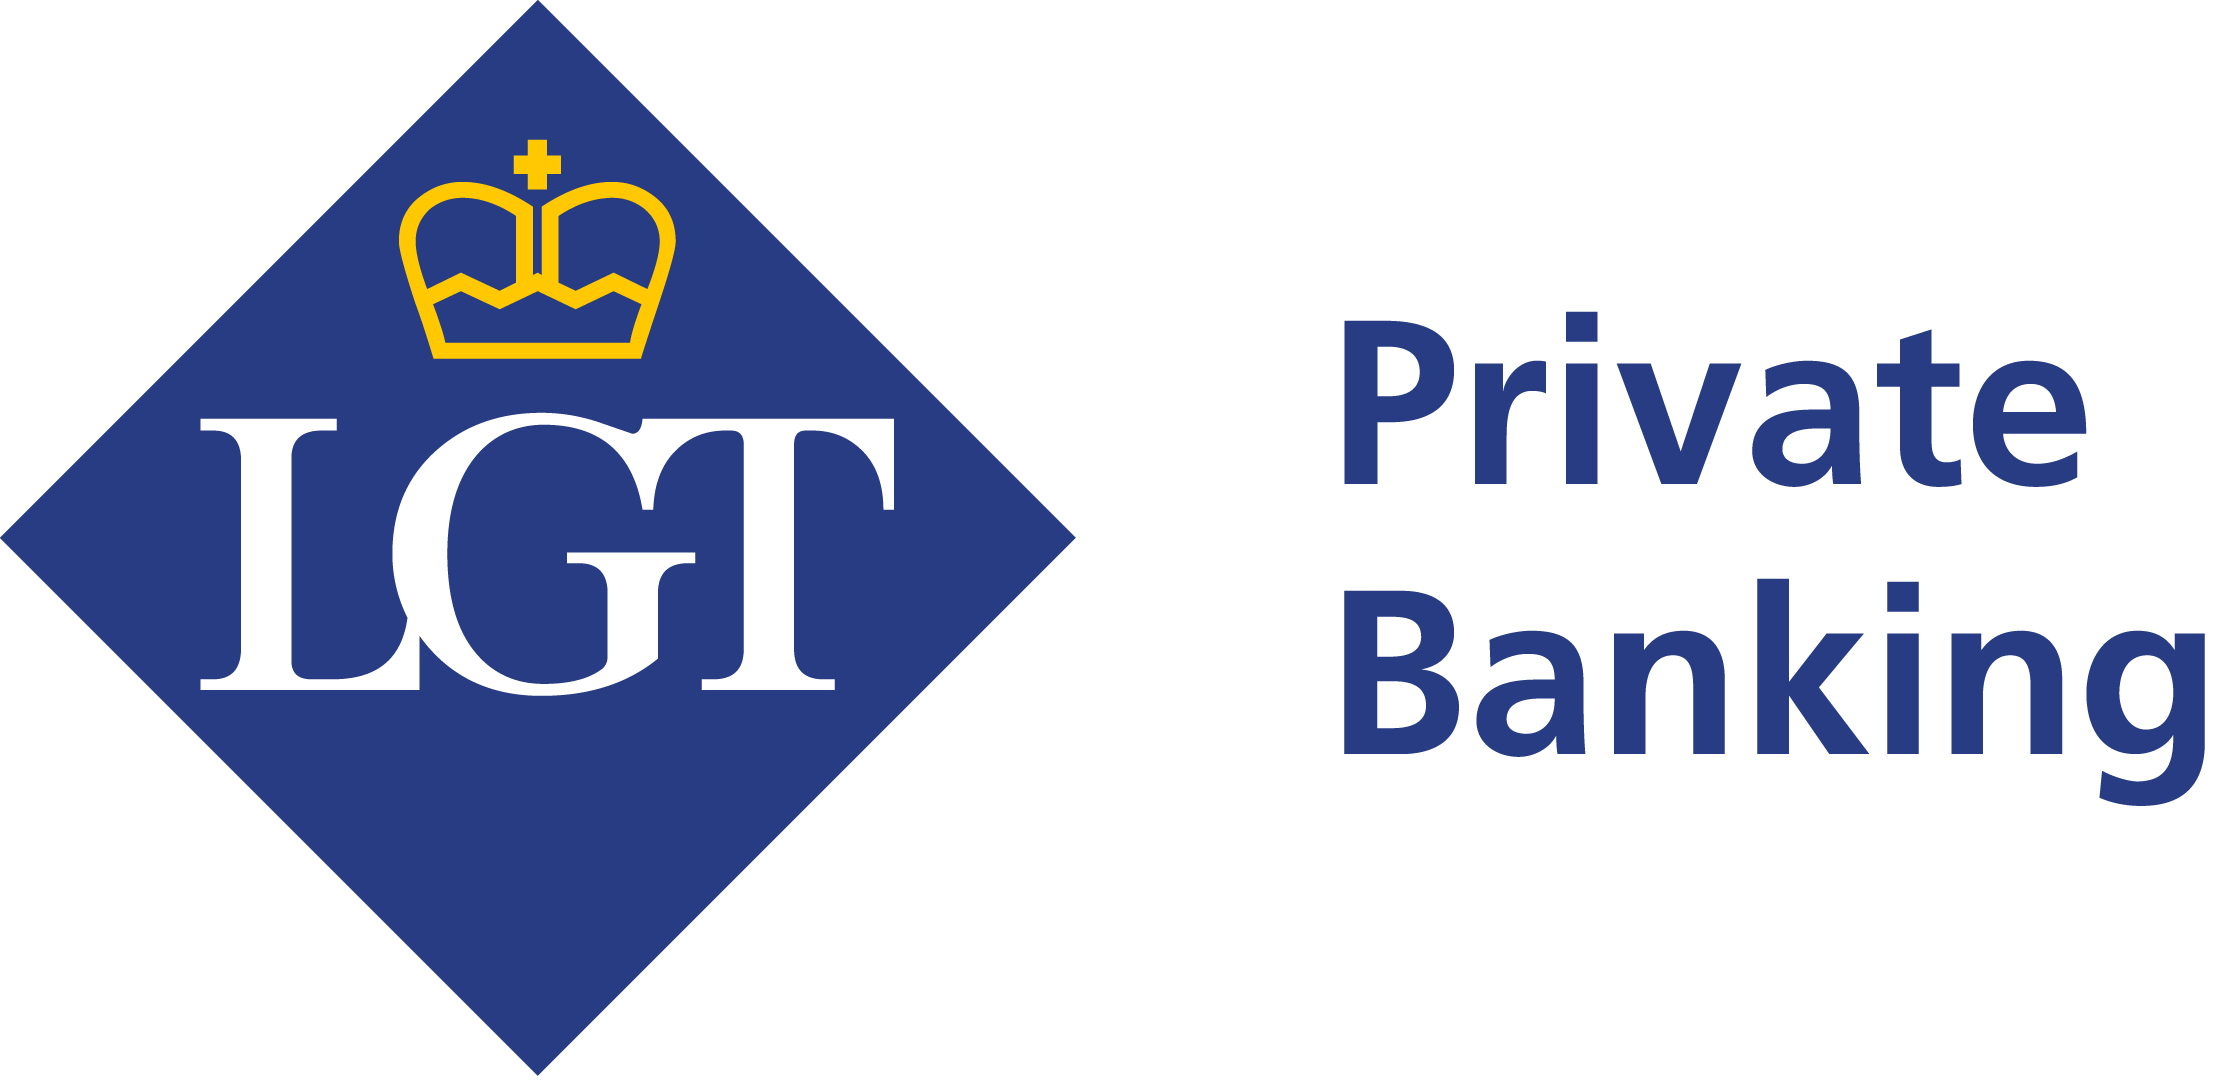 LGT Wealth Management Trust